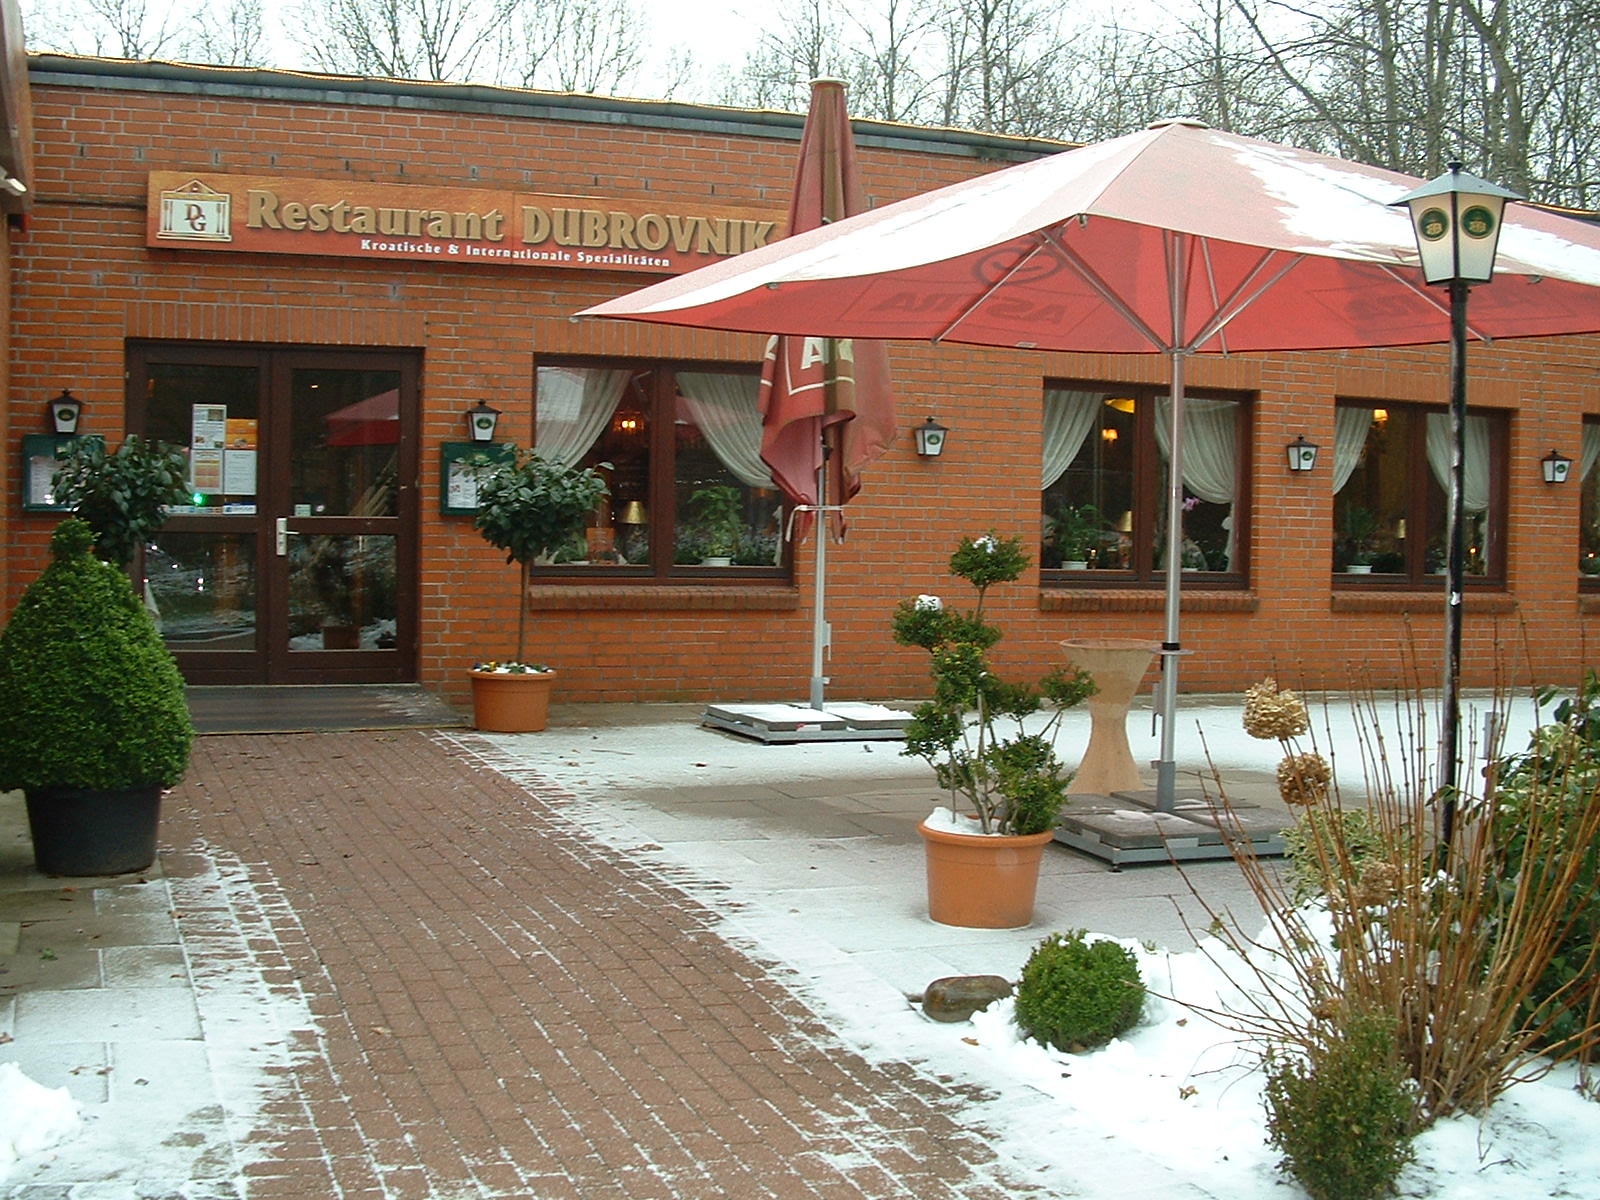 Restaurant Dubrovnik in Pinneberg im Winter